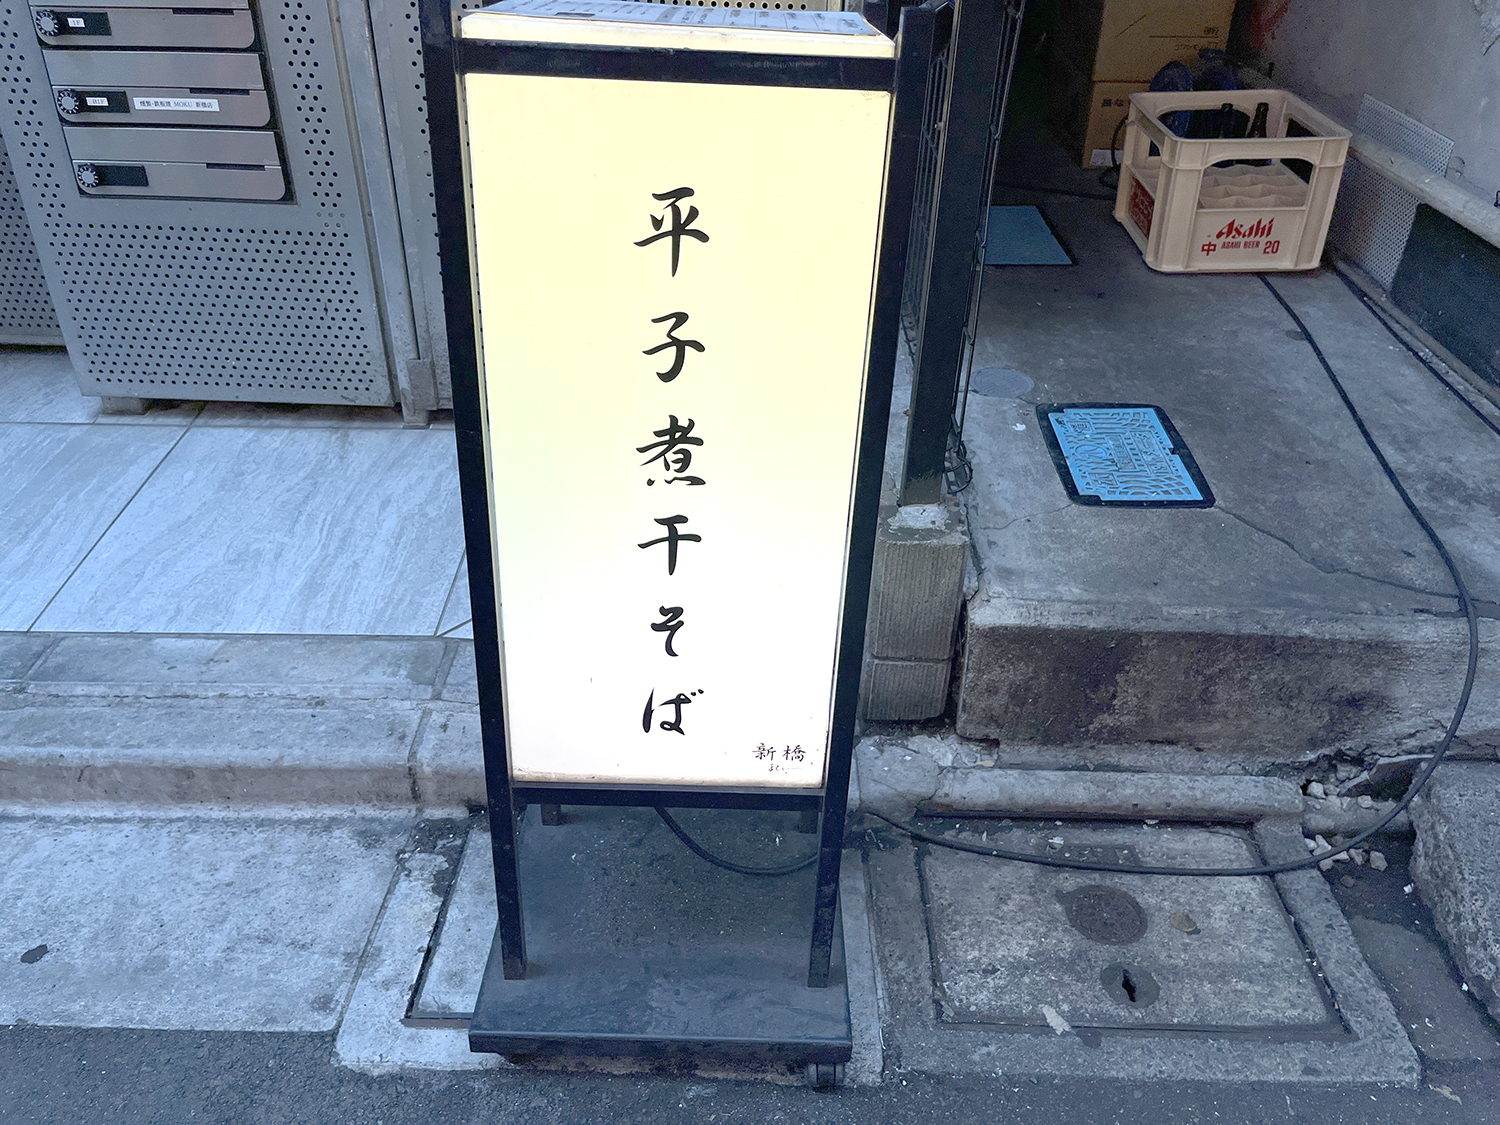 新橋柳通りから路地にはいると、確かにこの看板が見えたが店はドコ？